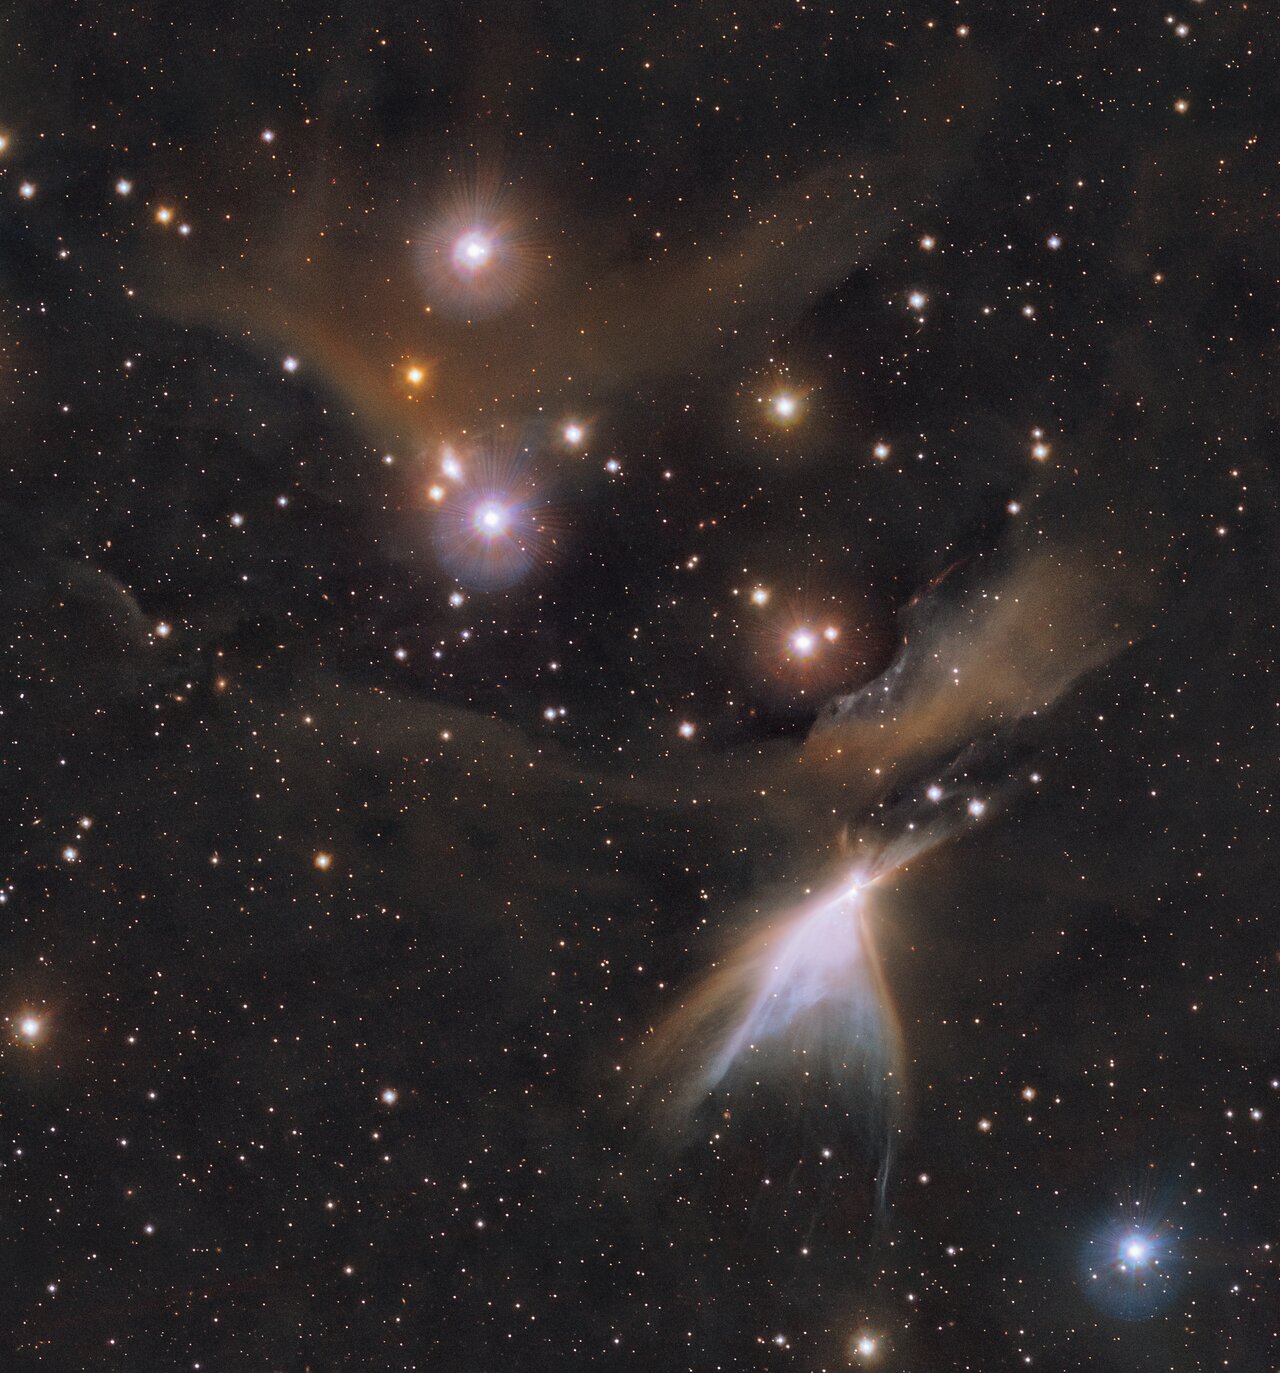 Esta imagem mostra o objeto HH 909 A na constelação de Chamaeleon.  Novas estrelas nascem nas nuvens coloridas de gás e poeira vistas aqui.  As observações infravermelhas subjacentes a esta imagem revelam novos detalhes nas regiões de formação de estrelas que geralmente são obscurecidas pelas nuvens de poeira.  A imagem foi produzida com dados coletados pelo instrumento VIRCAM, que está acoplado ao telescópio VISTA no Observatório do Paranal do ESO no Chile.  As observações foram feitas como parte da pesquisa VISIONS, que permitirá aos astrônomos entender melhor como as estrelas se formam nessas regiões envoltas em poeira.